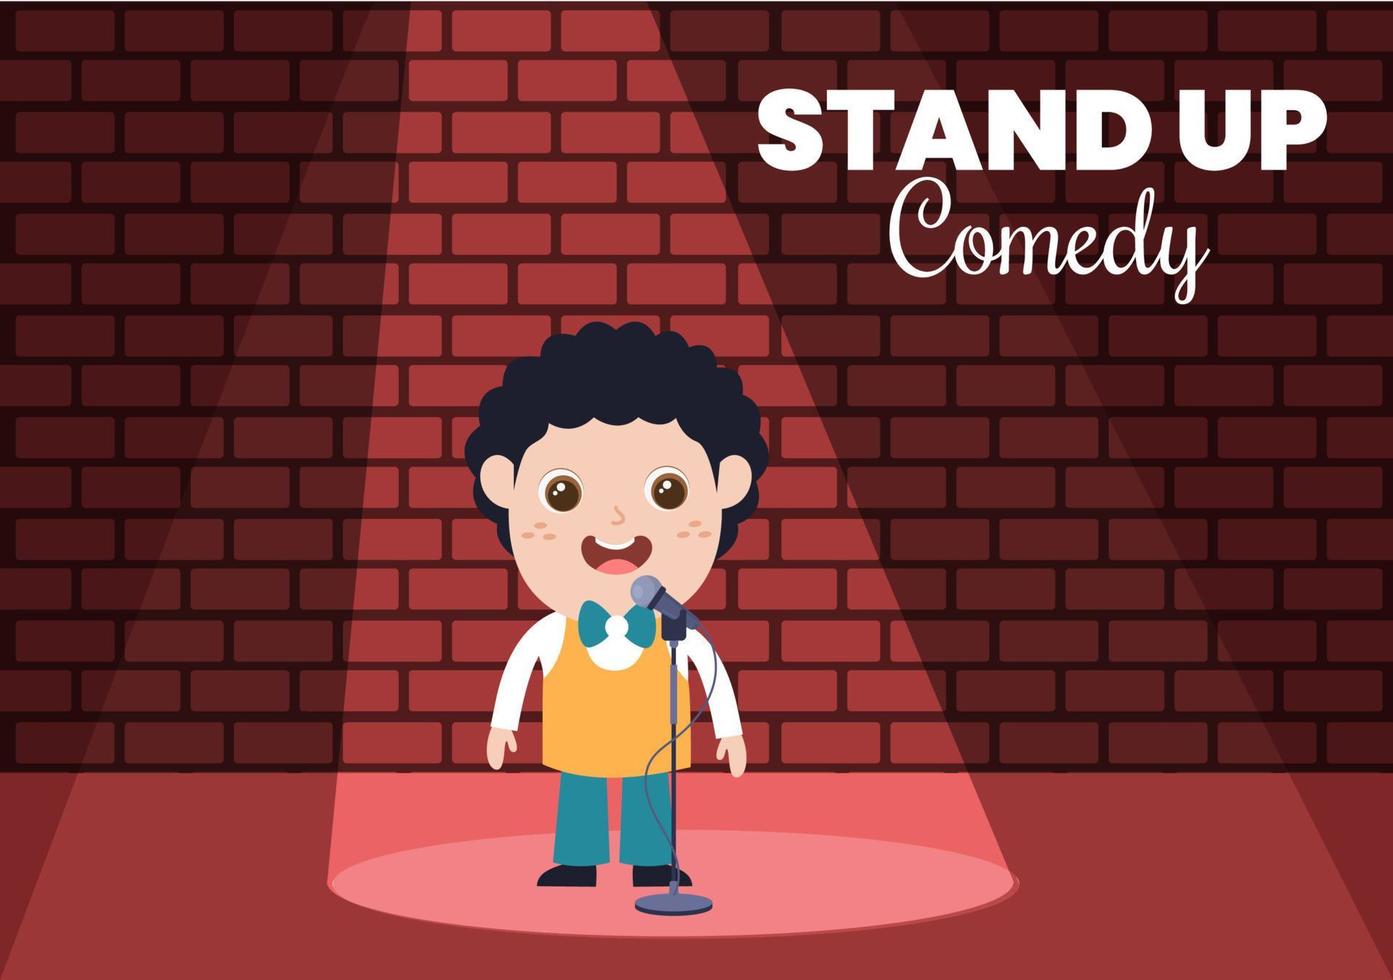 cena de teatro de show de comédia stand up com cortinas vermelhas e microfone aberto para comediante se apresentando no palco em ilustração de desenho animado estilo simples vetor